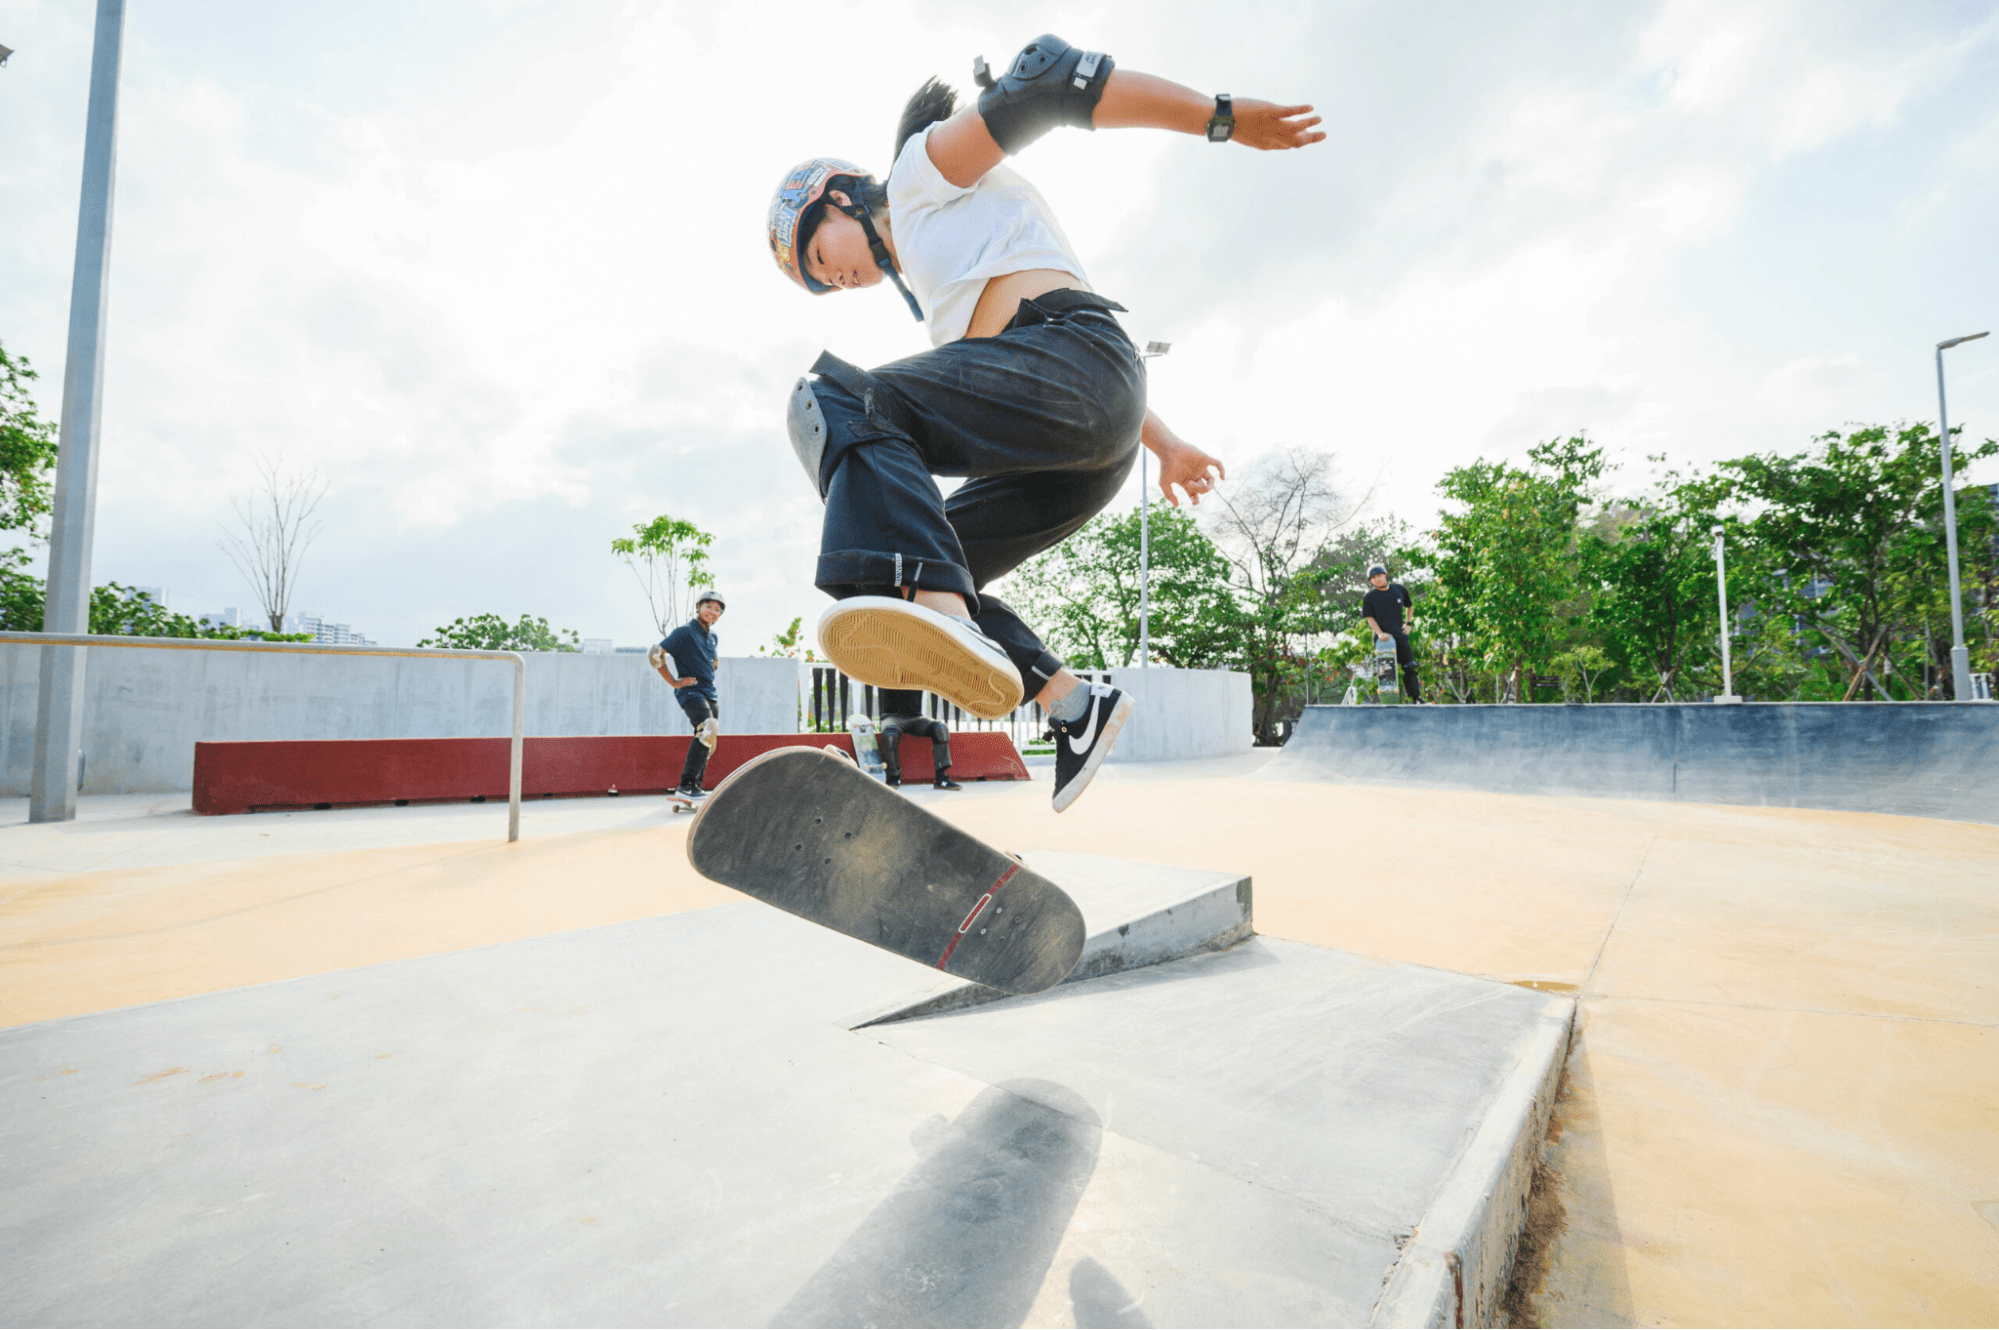 neighbourhood parks unique activities - Jurong Lake Gardens skatepark